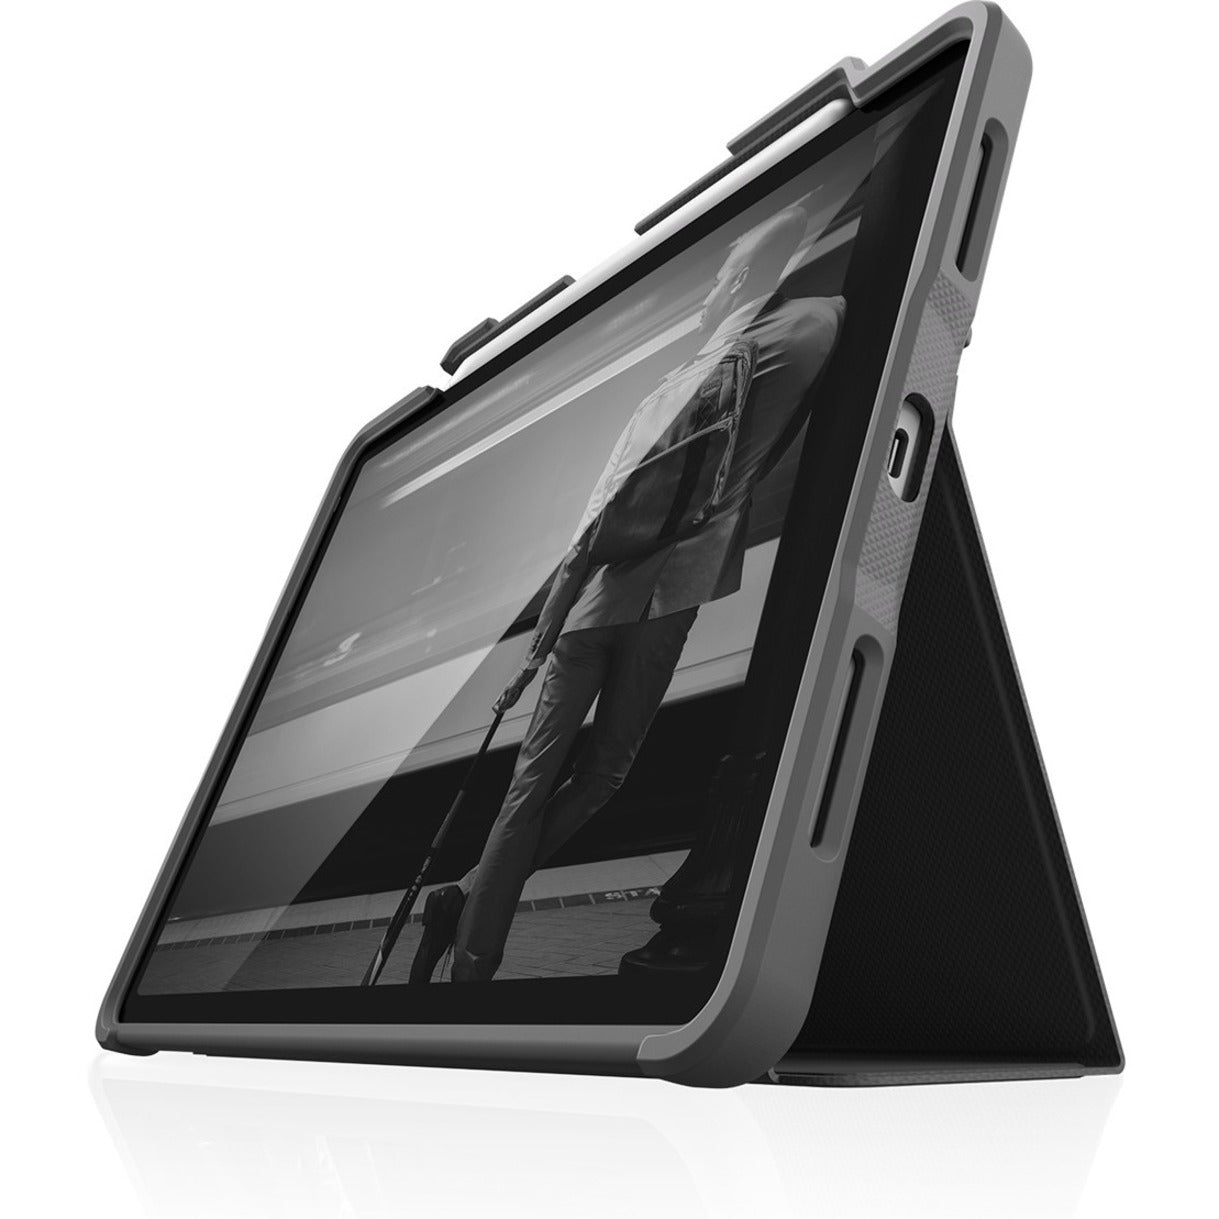 品牌名称：STM Goods STM-222-334KZ-01 DUX PLUS iPad Pro Models With Apple Pencil Storage (2021) Black 11"   黑色 - hēisè  11英寸 - 11 yīngcùn